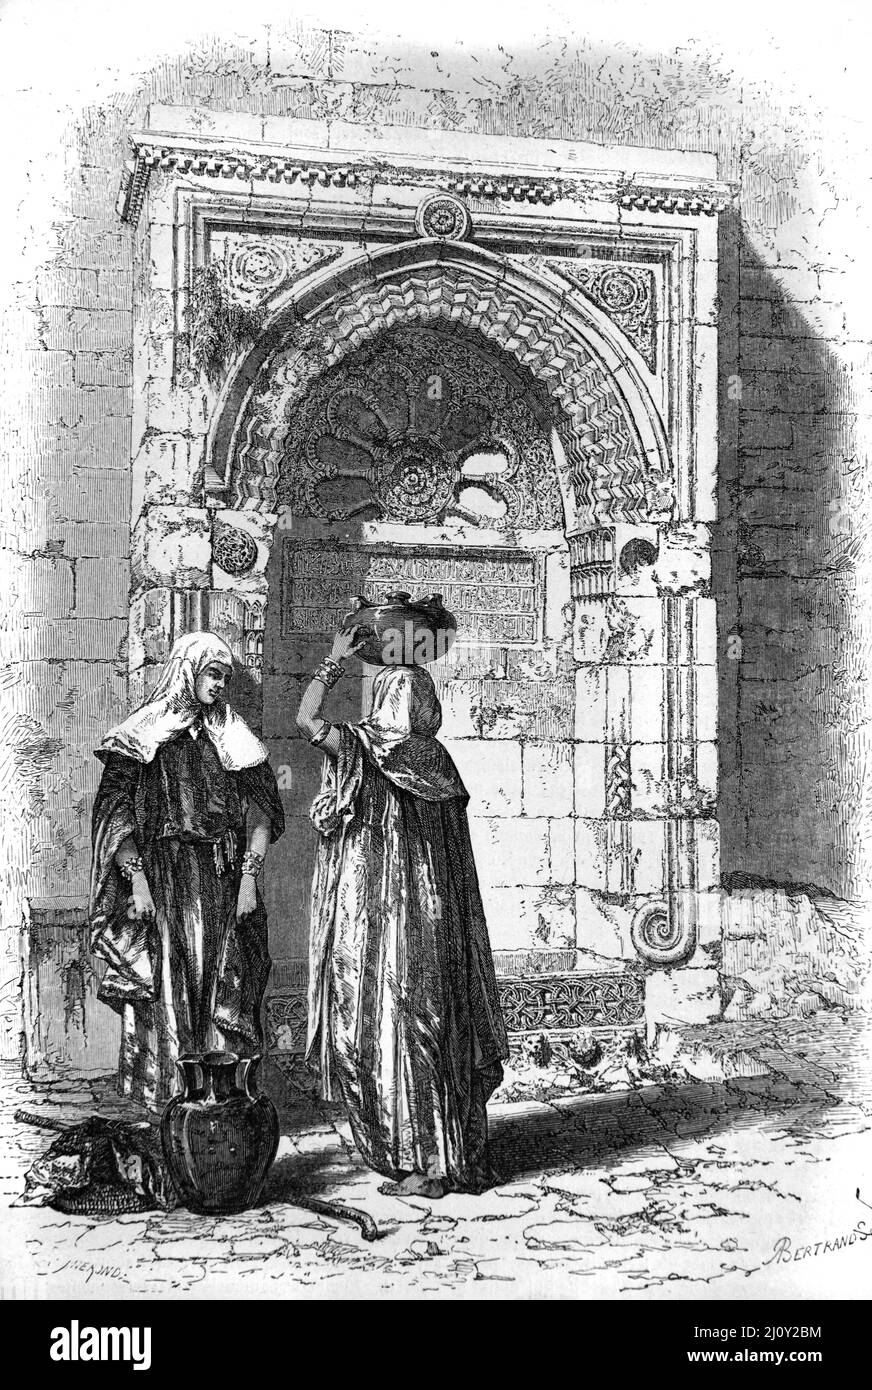 Frauen in Bethlehem sammeln Wasser und plaudern in der Straße vor dem Straßenbrunnen Bethlehem Palästina. Vintage Illustration oder Gravur 1860. Stockfoto